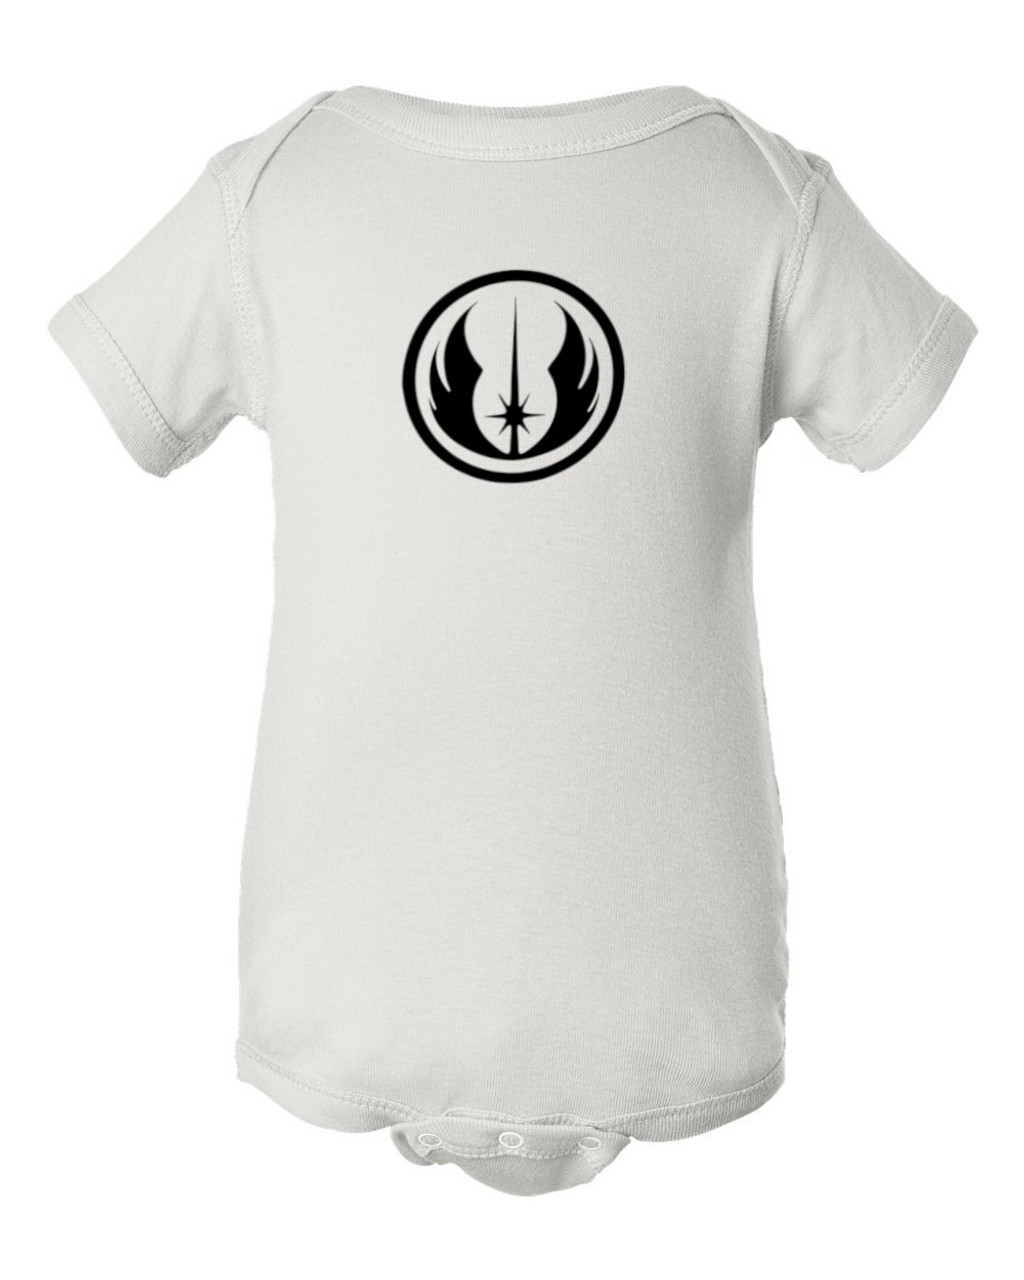 Jedi Order Symbol & Emblem Baby Bodysuit Infant Star Force Wars